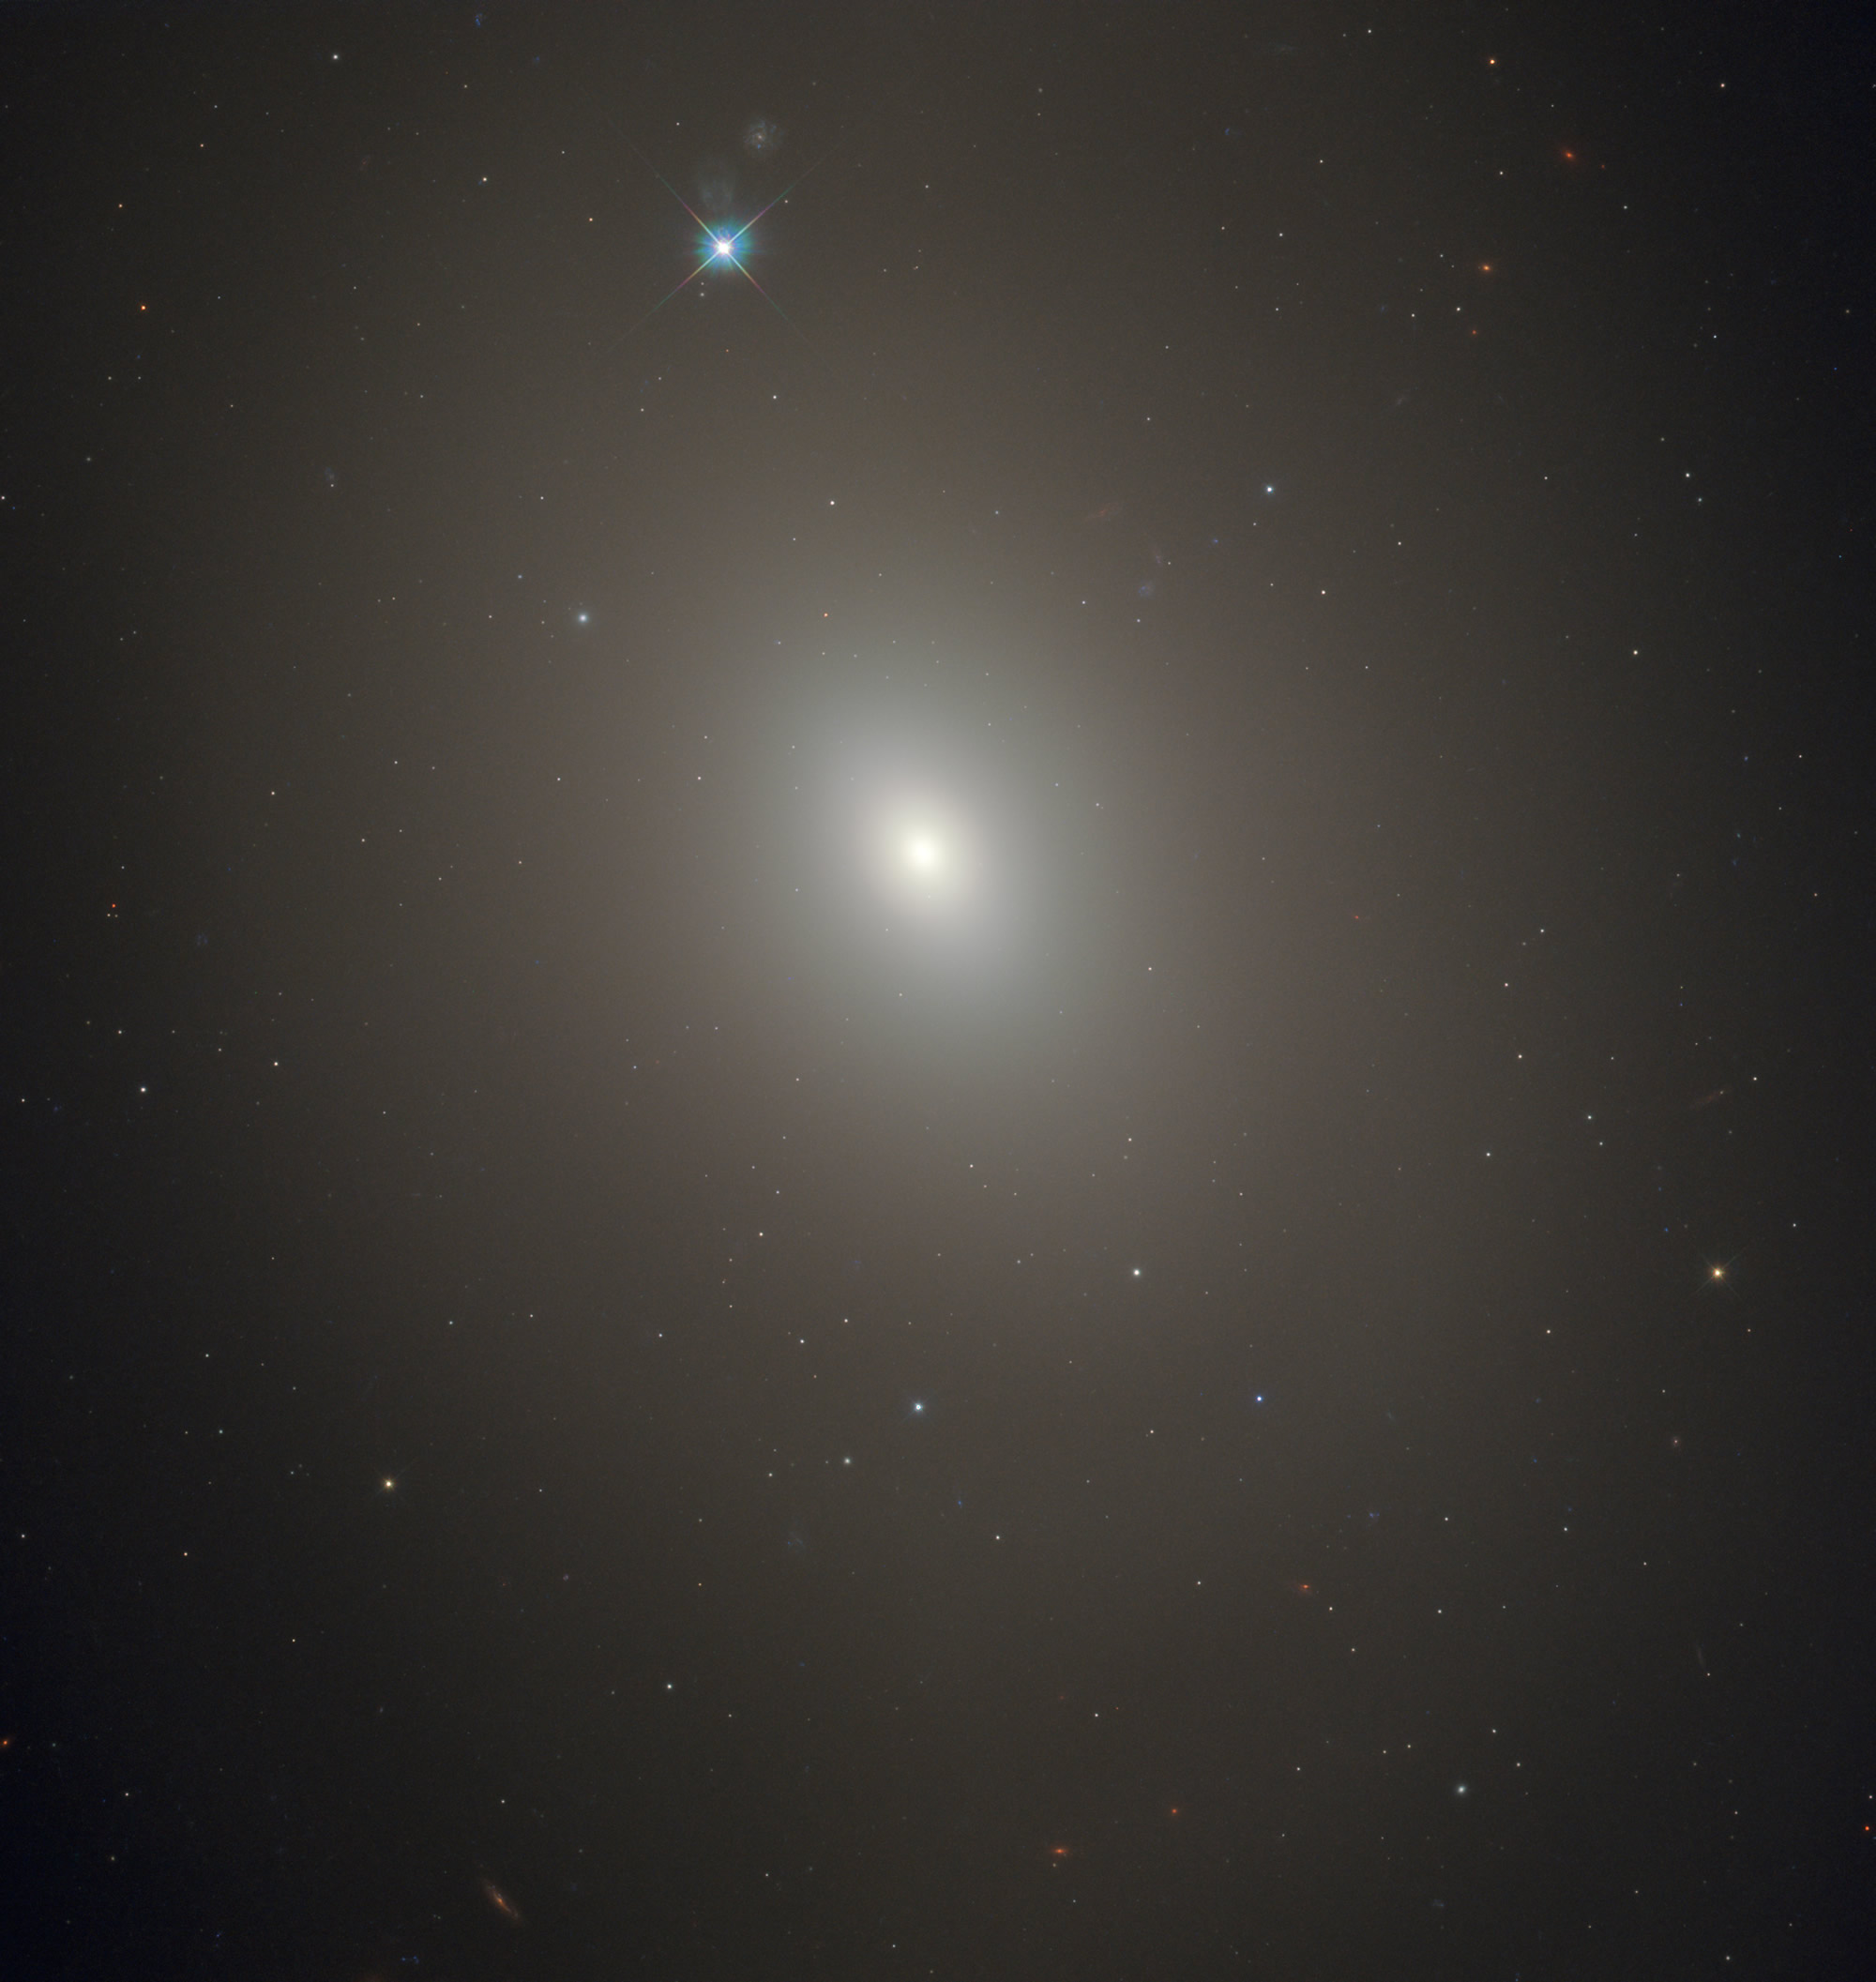 哈勃太空望远镜捕捉到一个朦胧的星系梅西耶85